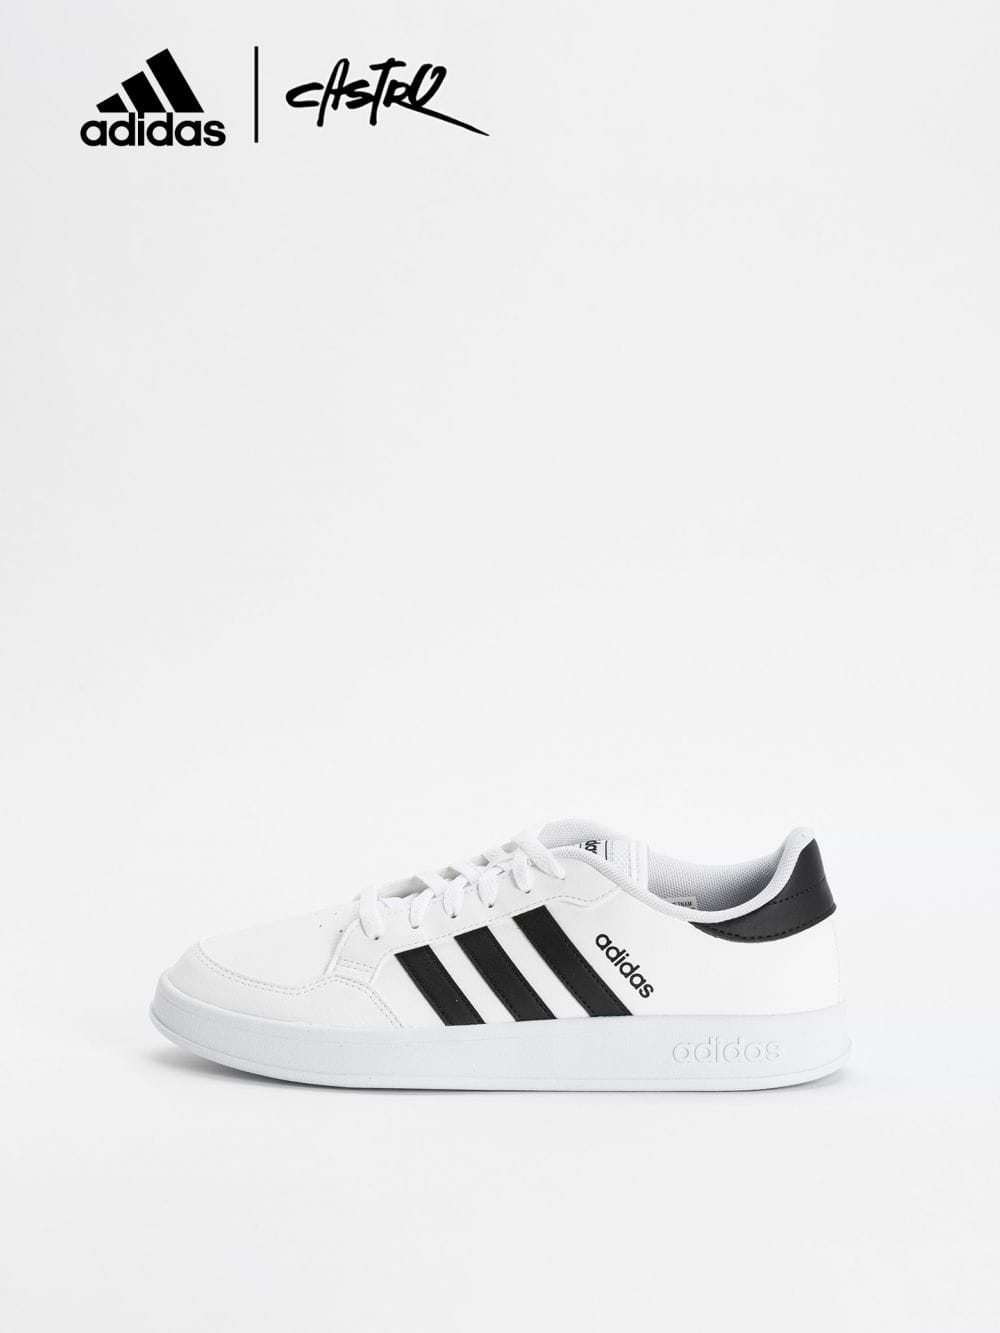 נעלי Adidas לבן ושחור / גברים